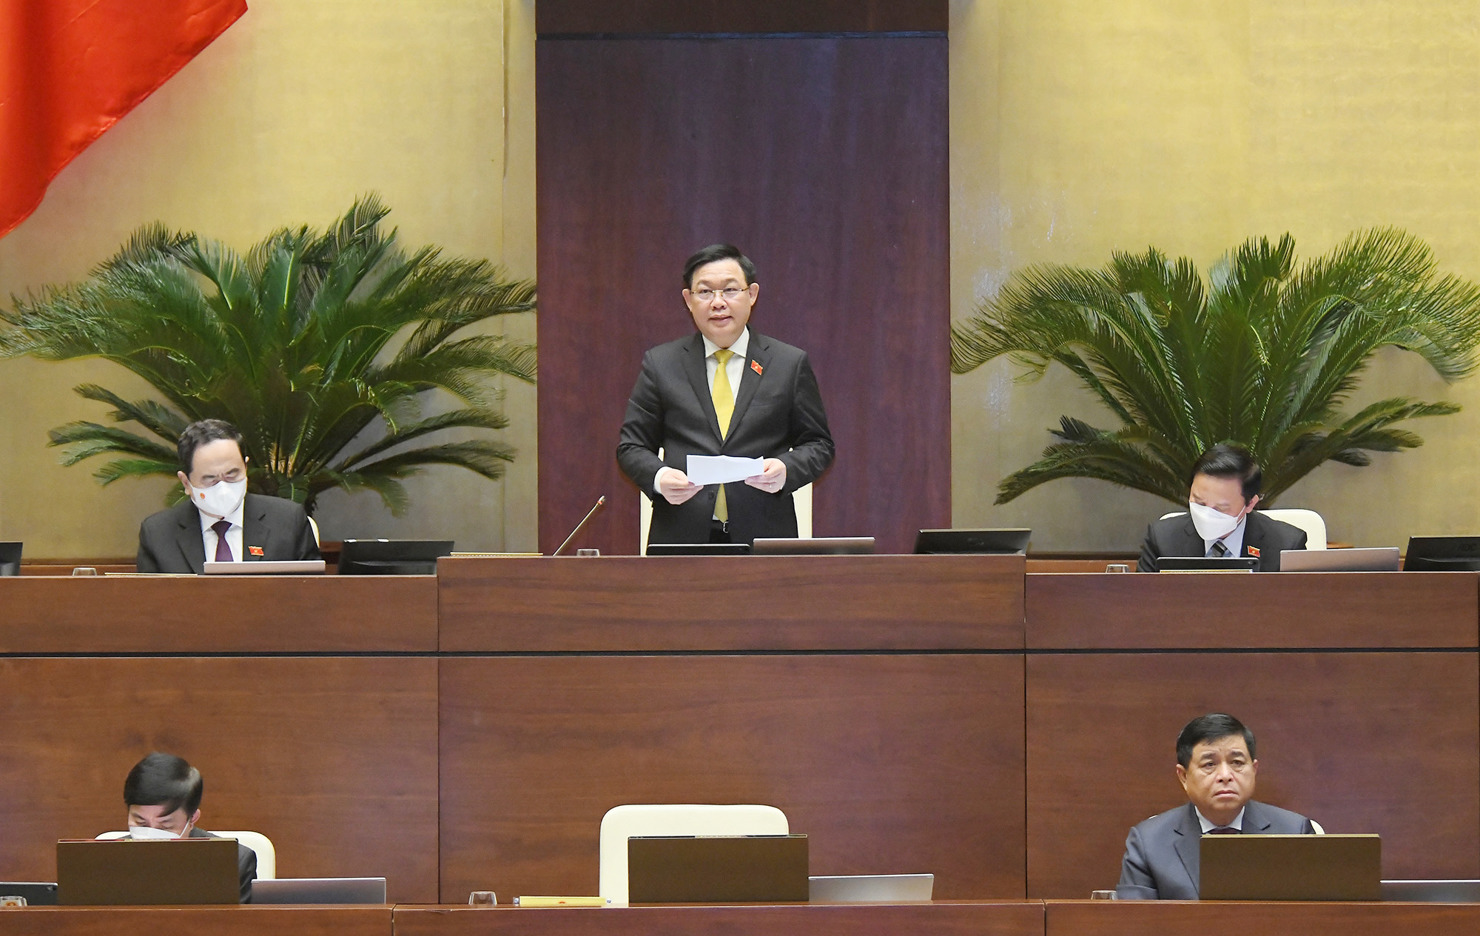 Chủ tịch Quốc hội Vương Đình Huệ kết luận phần chất vấn và trả lời chất vấn nhóm vấn đề thuộc lĩnh vực kế hoạch và đầu tư.